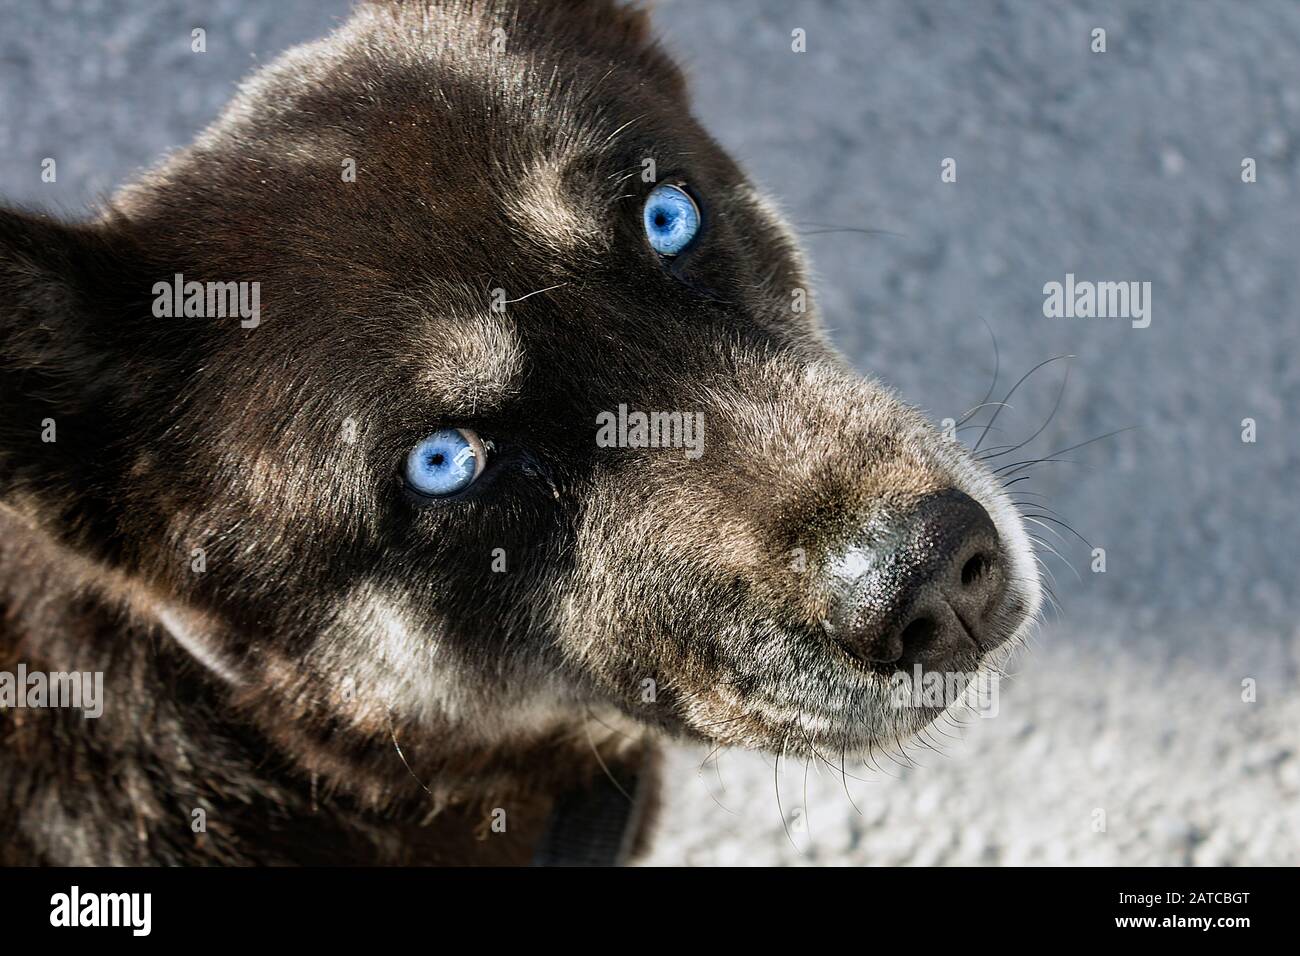 Nahaufnahme des Kopfes eines streunenden Hundes, Mulatto, vererbte Husky-Augen in eisblauer Farbe, mit Blick auf die Kamera in einem Bild mit hohem Blickwinkel. Stockfoto